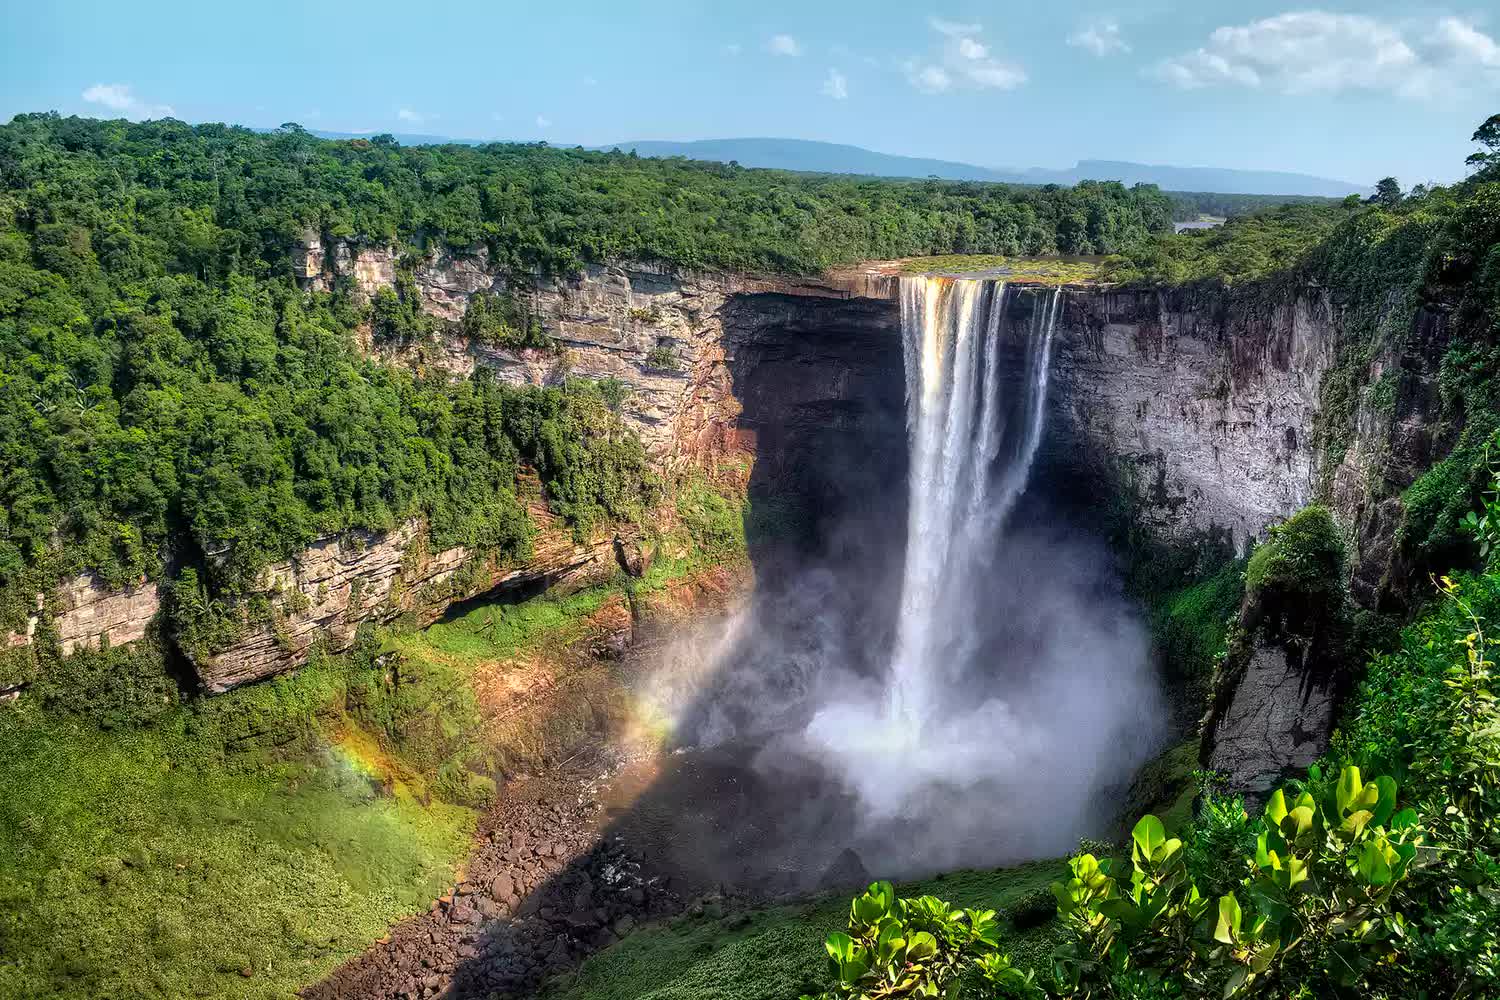 Chiêm ngưỡng 21 thác nước đẹp nhất thế giới: Việt Nam có tên, là thác nắm kỷ lục Đông Nam Á - Ảnh 16.